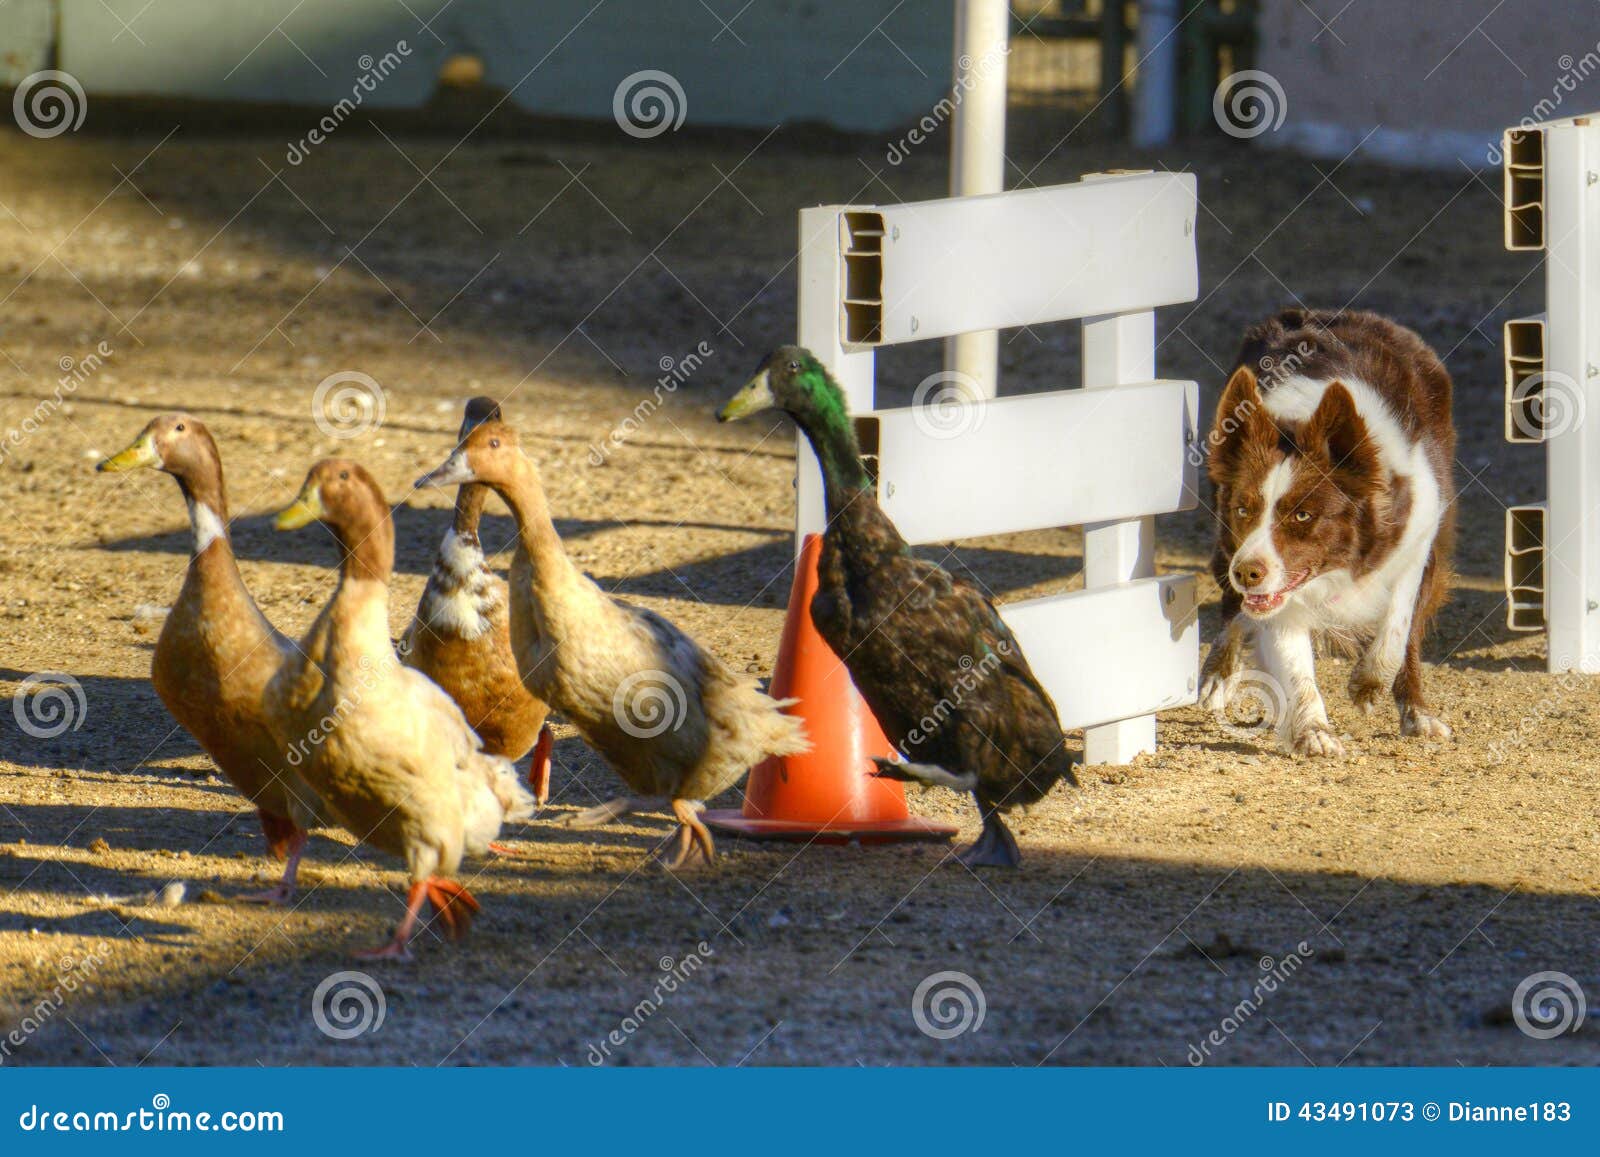 dog herding ducks